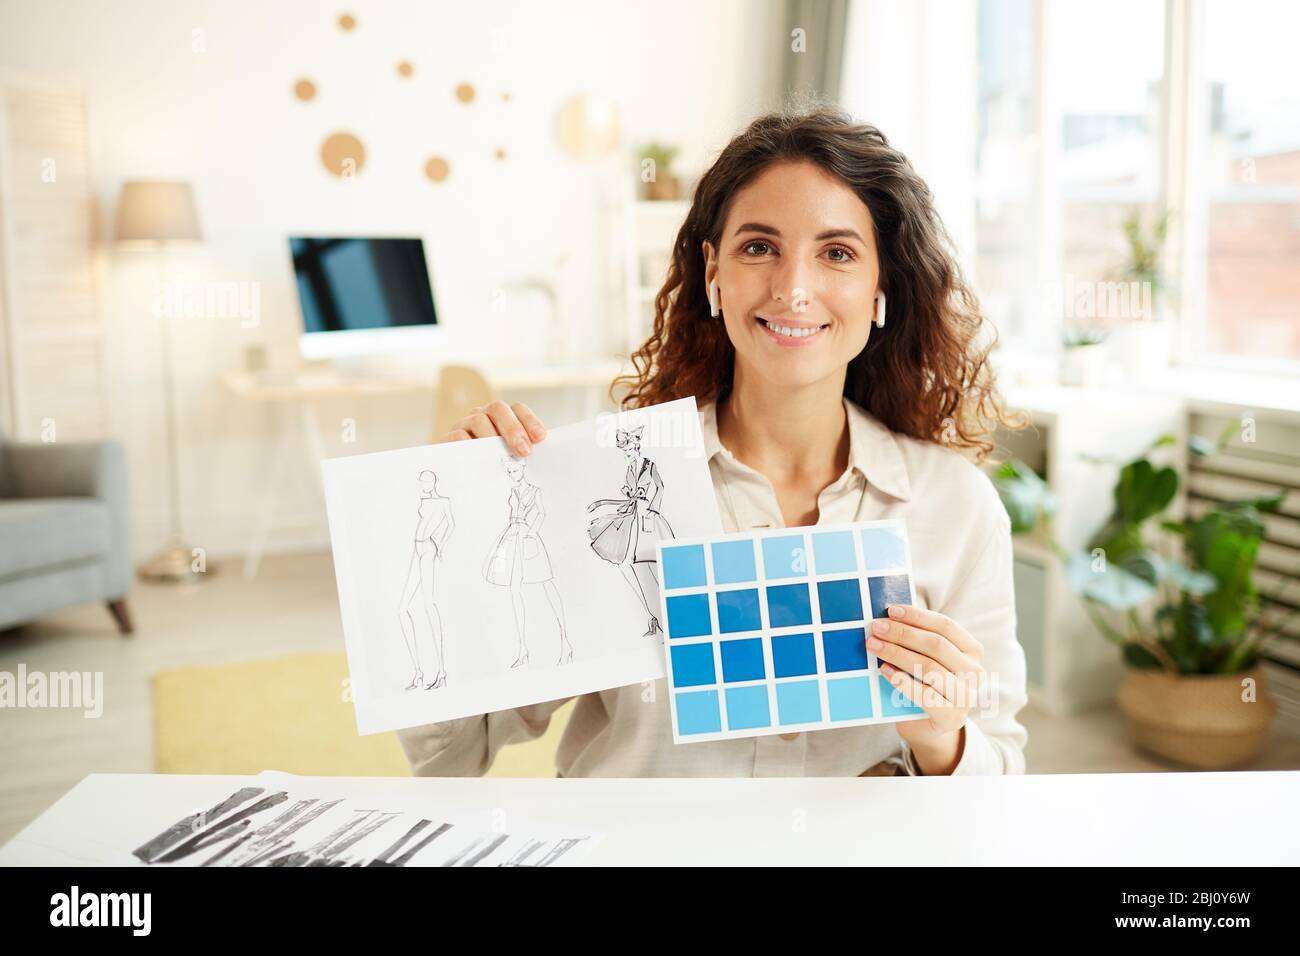 Diseñadora de ropa femenina que muestra bocetos y paleta de colores azules en la cámara, retrato horizontal medio Foto de stock